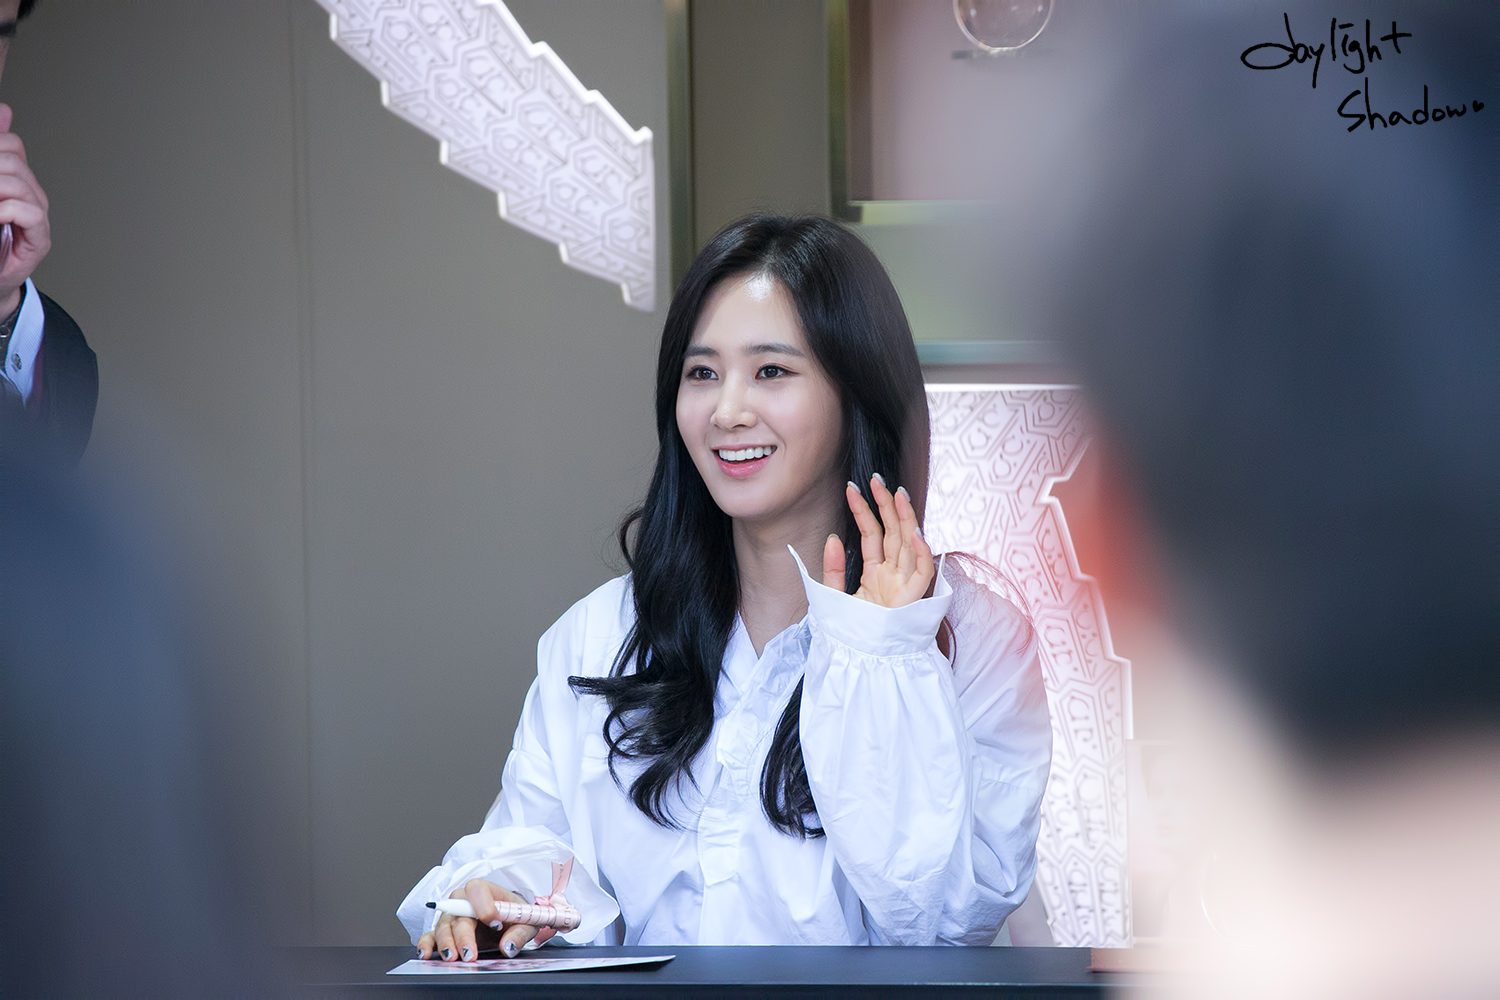 [PIC][09-10-2016]Yuri tham dự buổi Fansign thứ 2 cho thương hiệu nước hoa "BVLGARI Rose Goldea" tại Myeongdong Lotte Duty Free vào chiều nay - Page 4 25674135587114CE1B4627